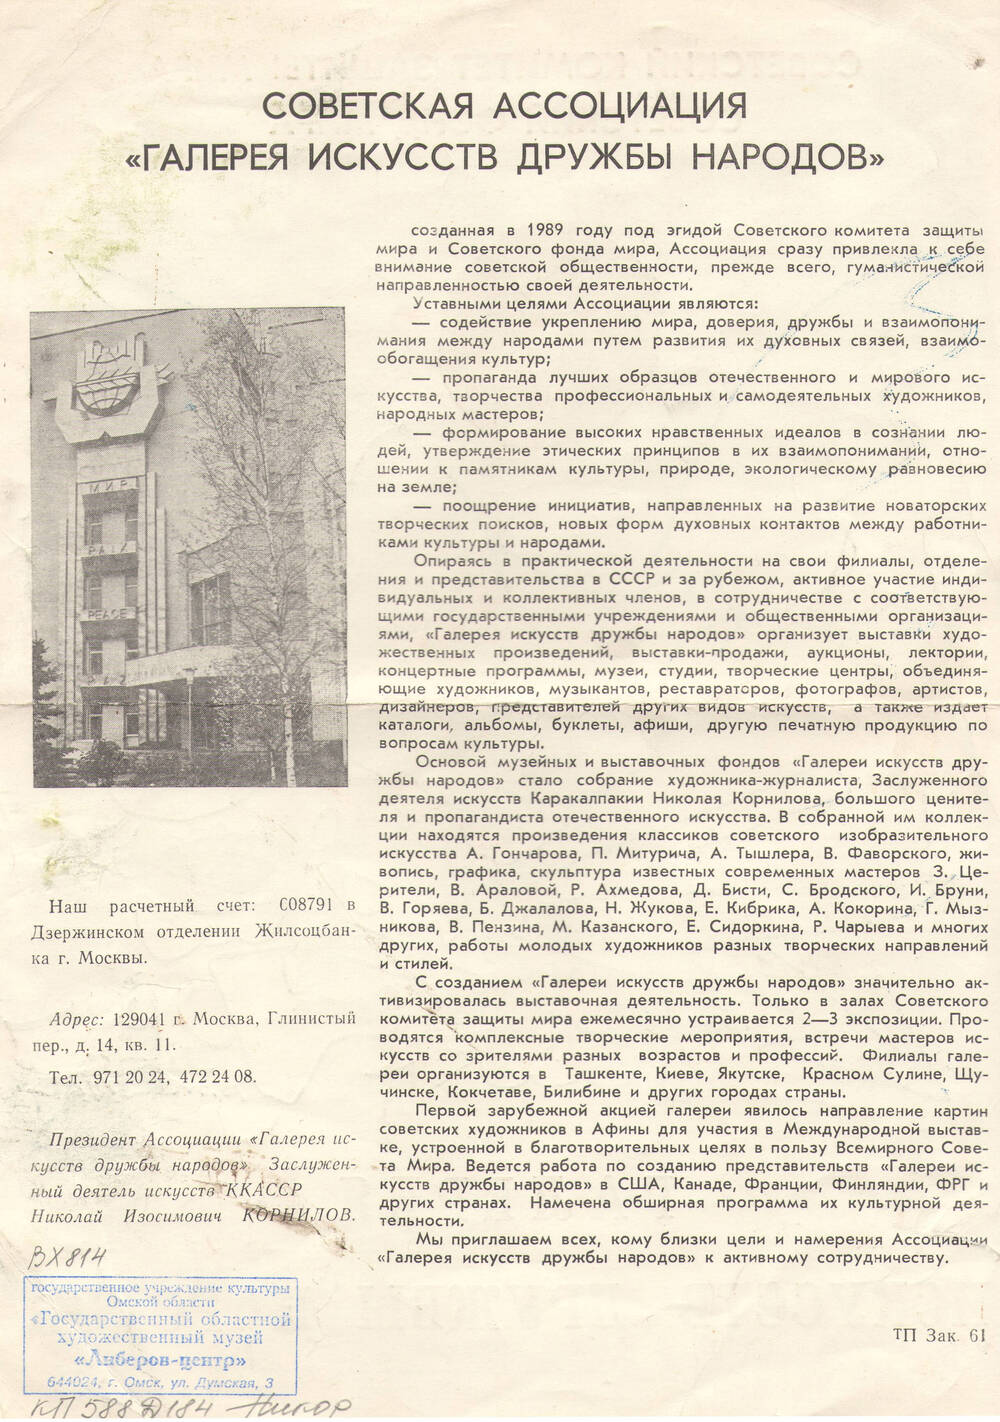 Информационный лист о Советской Ассоциации Галерея искусств дружбы народов